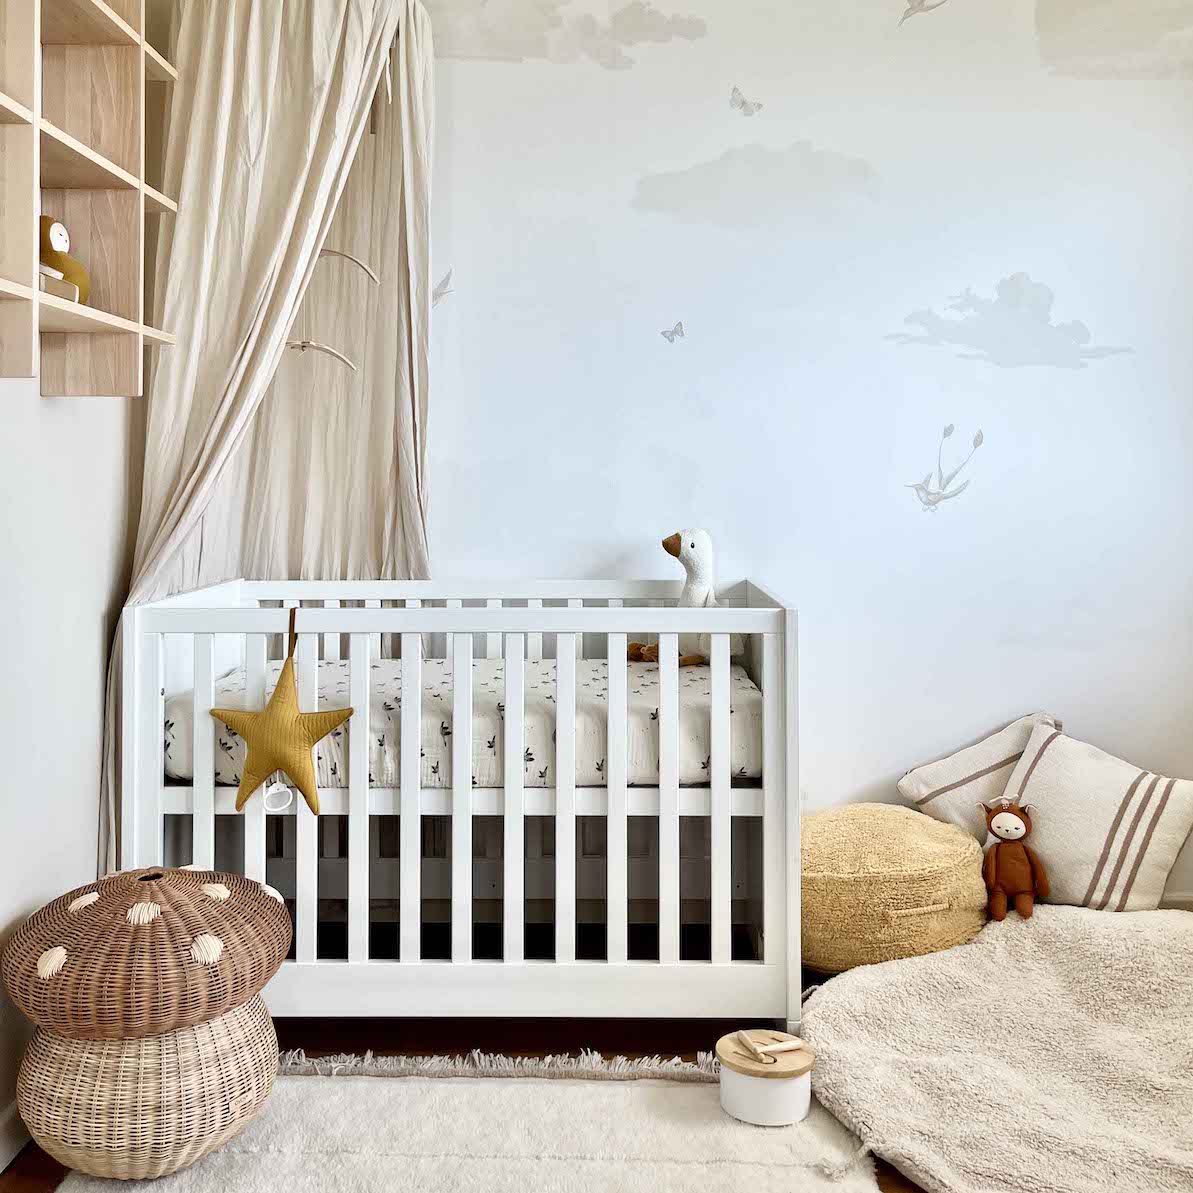 Déco chambre bébé : mobilier, jouets et accessoires bébés !